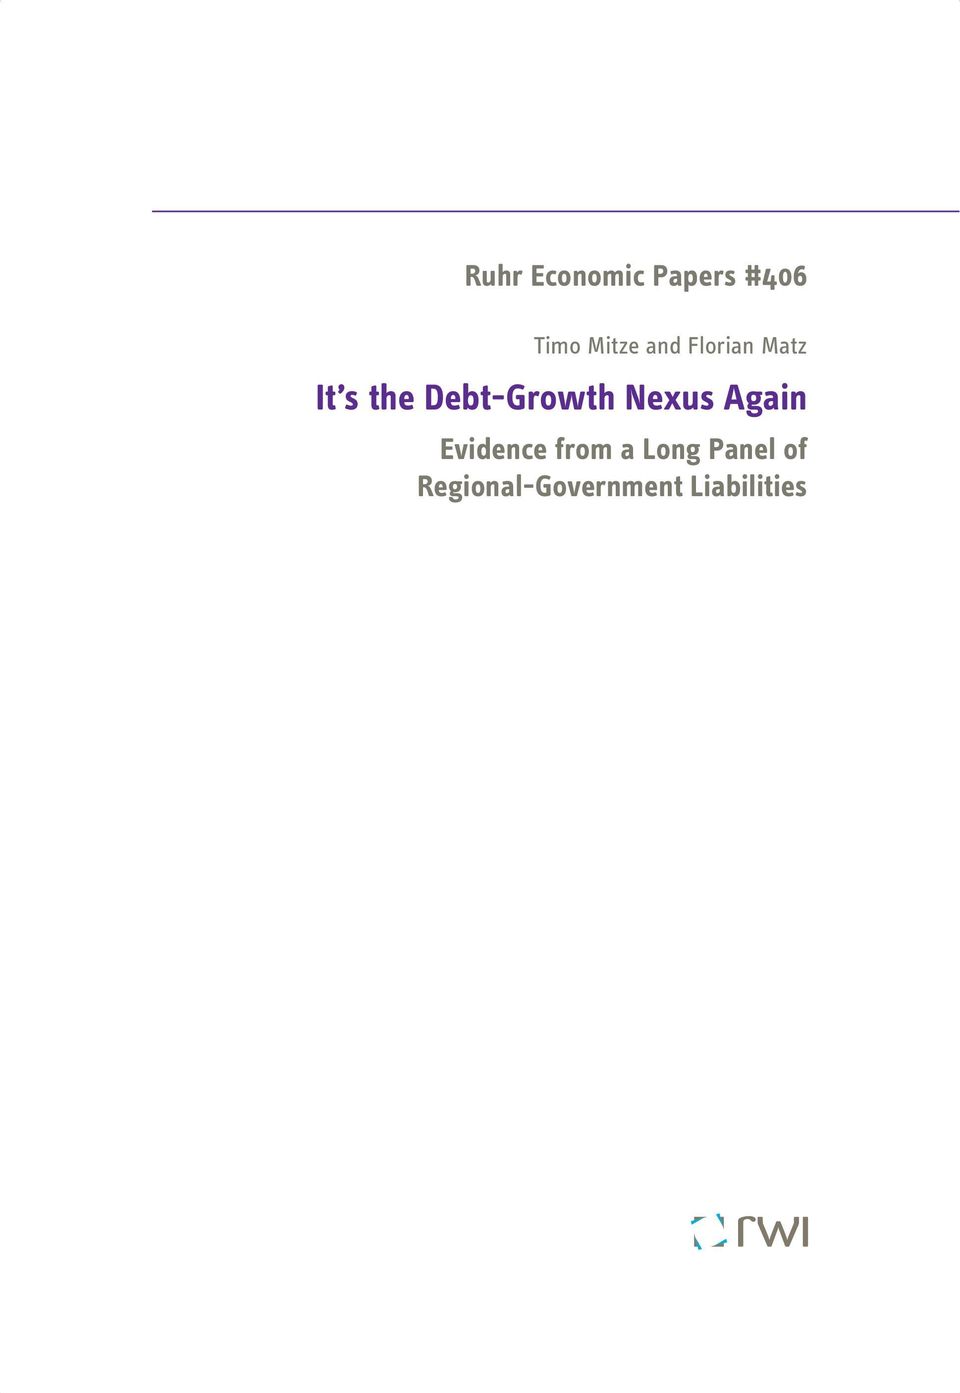 Debt-Growth Nexus Again Evidence